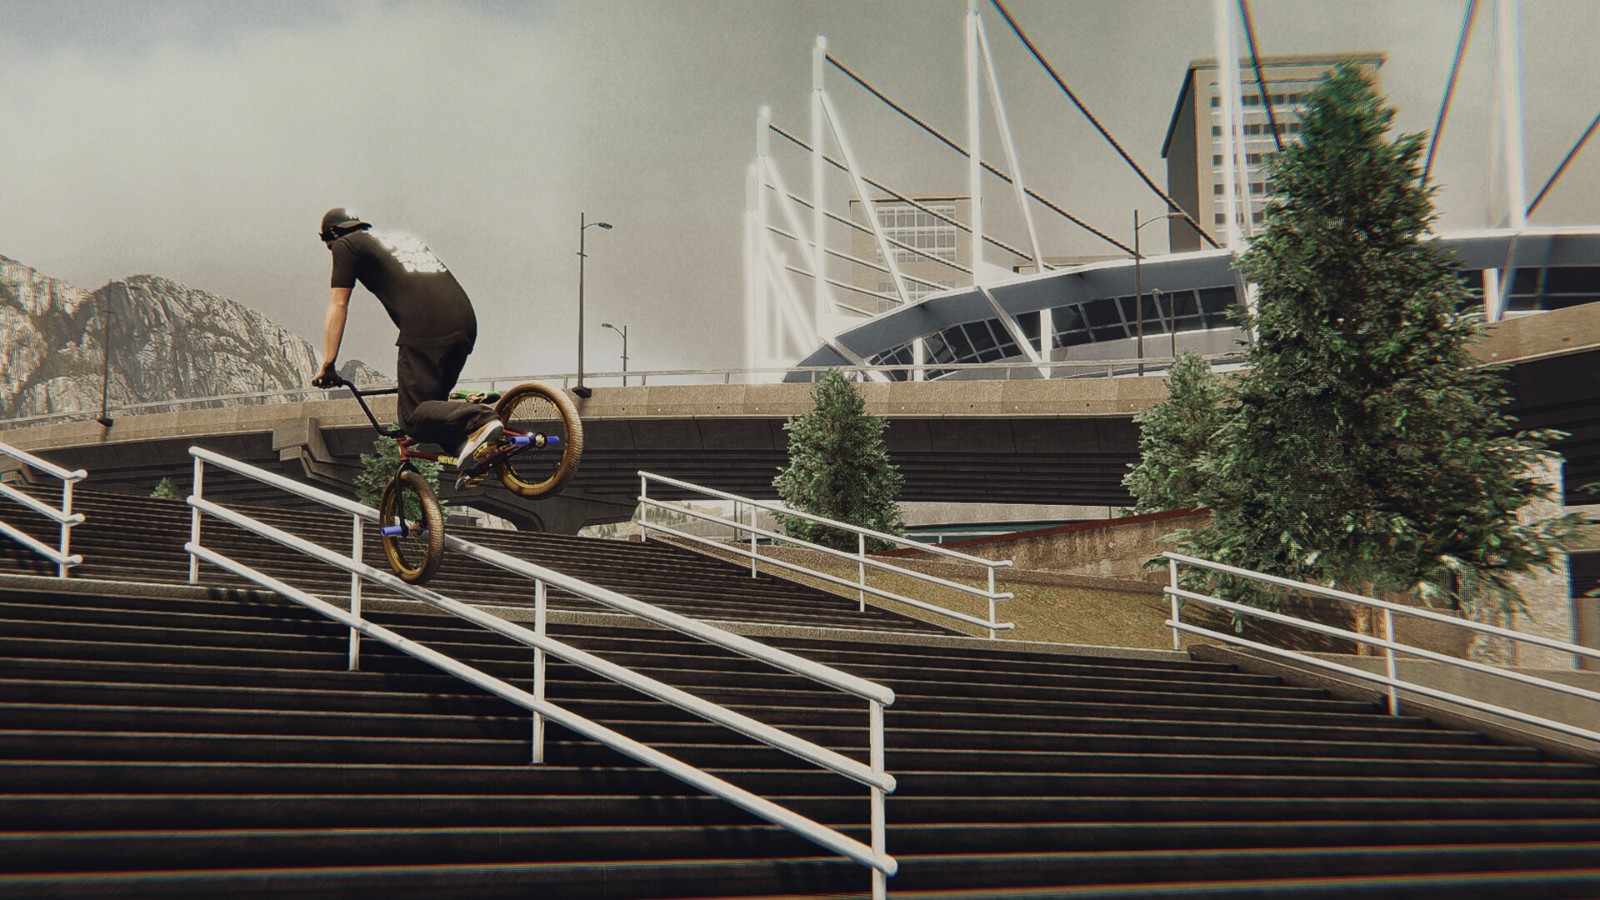 自行车特技模拟游戏《BMX Streets》4月5日发售 登陆Steam